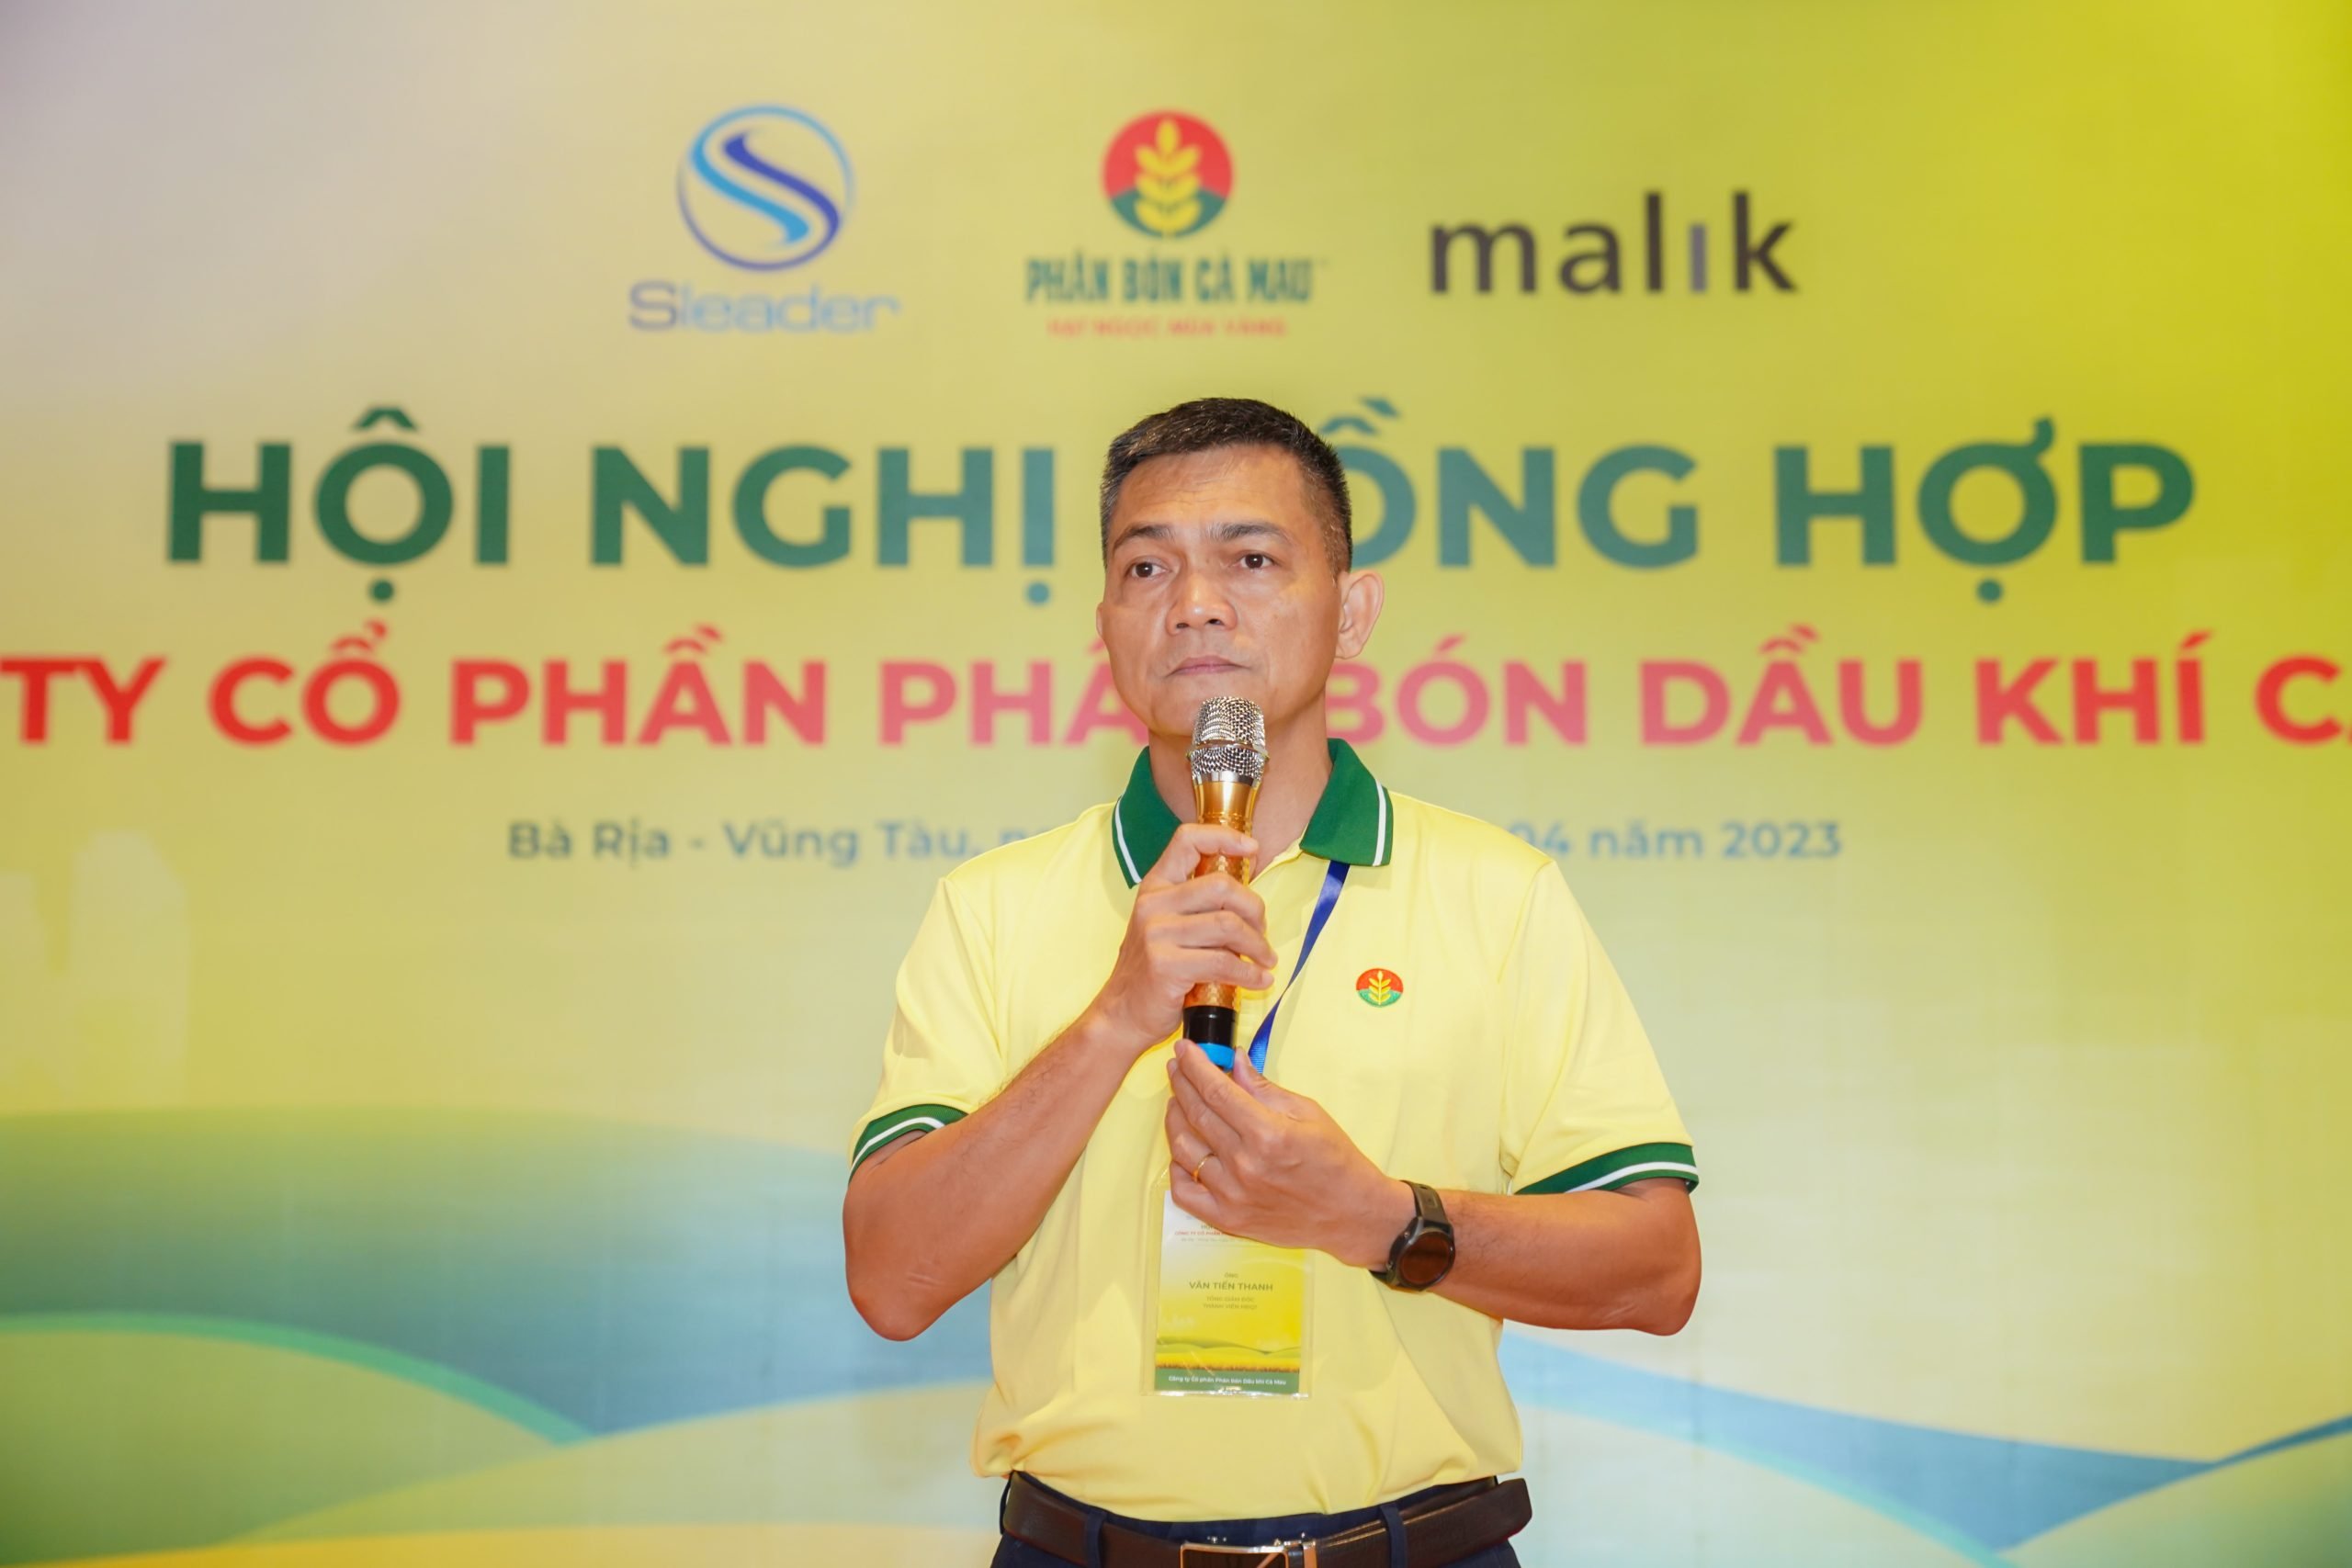 Ông Văn Tiến Thanh – Tổng Giám đốc Công ty Cổ phần Phân bón Dầu khí Cà Mau (PVCFC) phát biểu tổng kết Hội nghị Đồng hợp